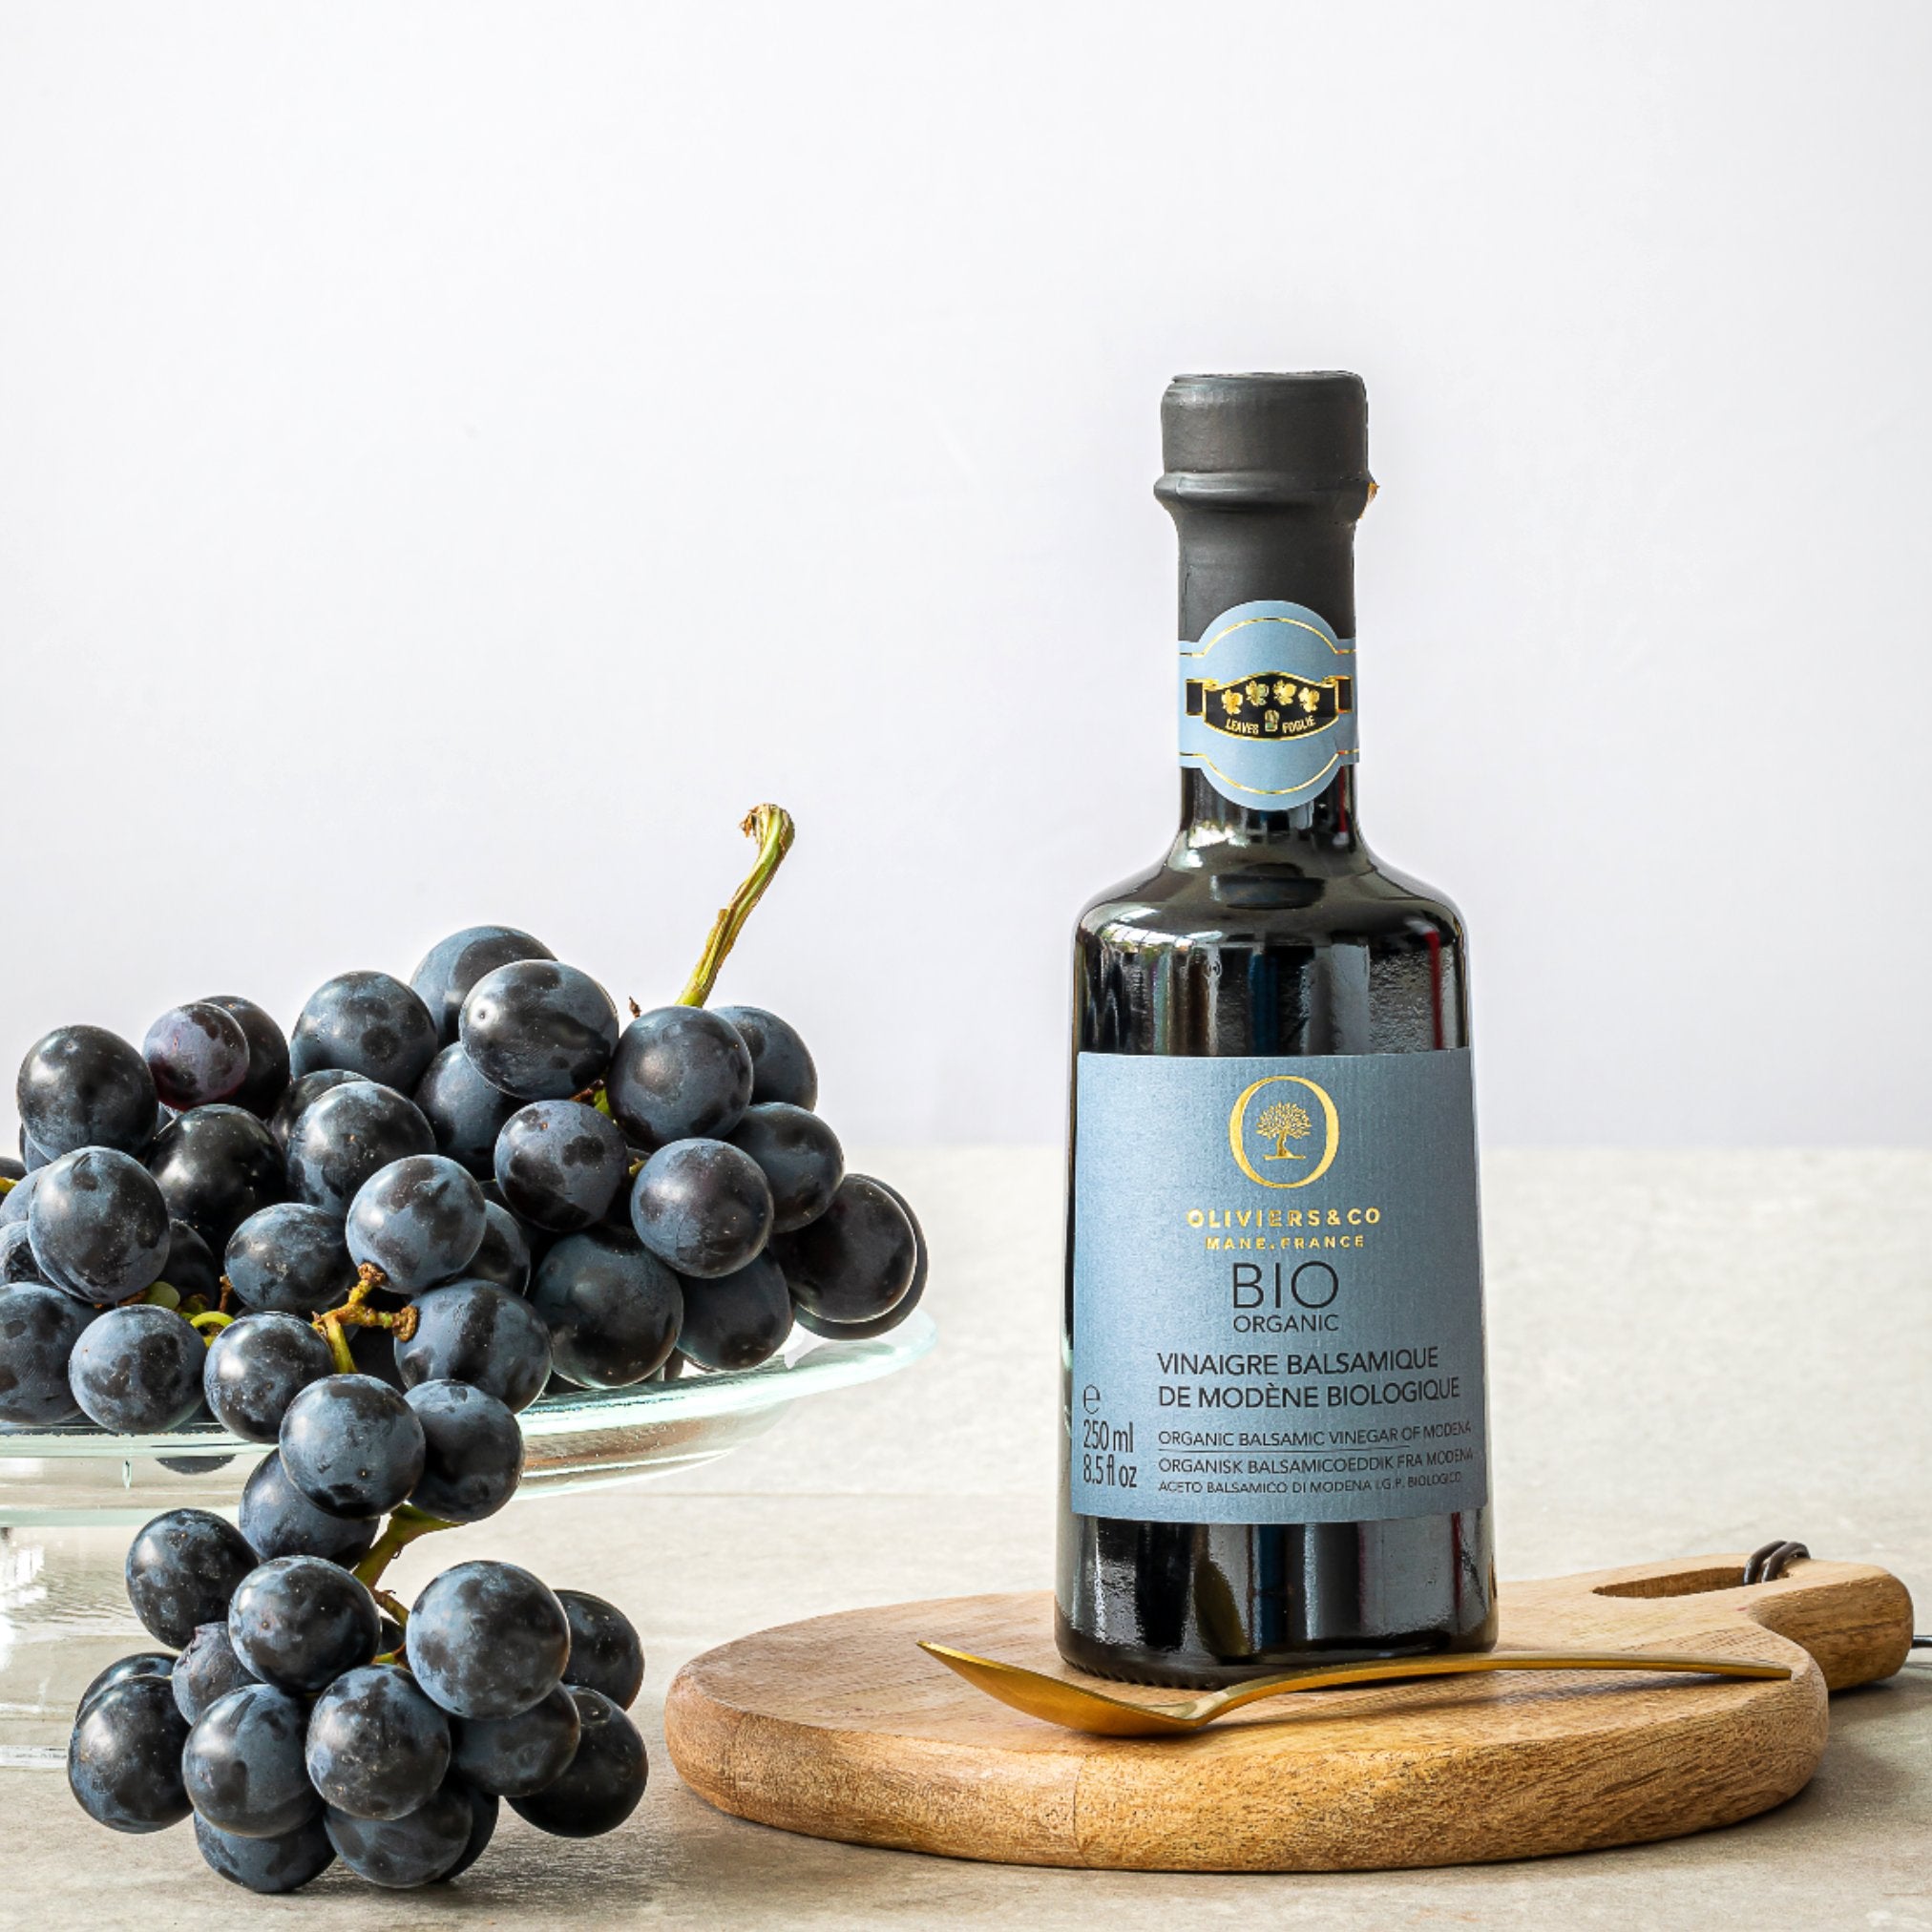 Økologisk premium lagret balsamico fra Modena på Trebbiano-druer fra Oliviers & Co